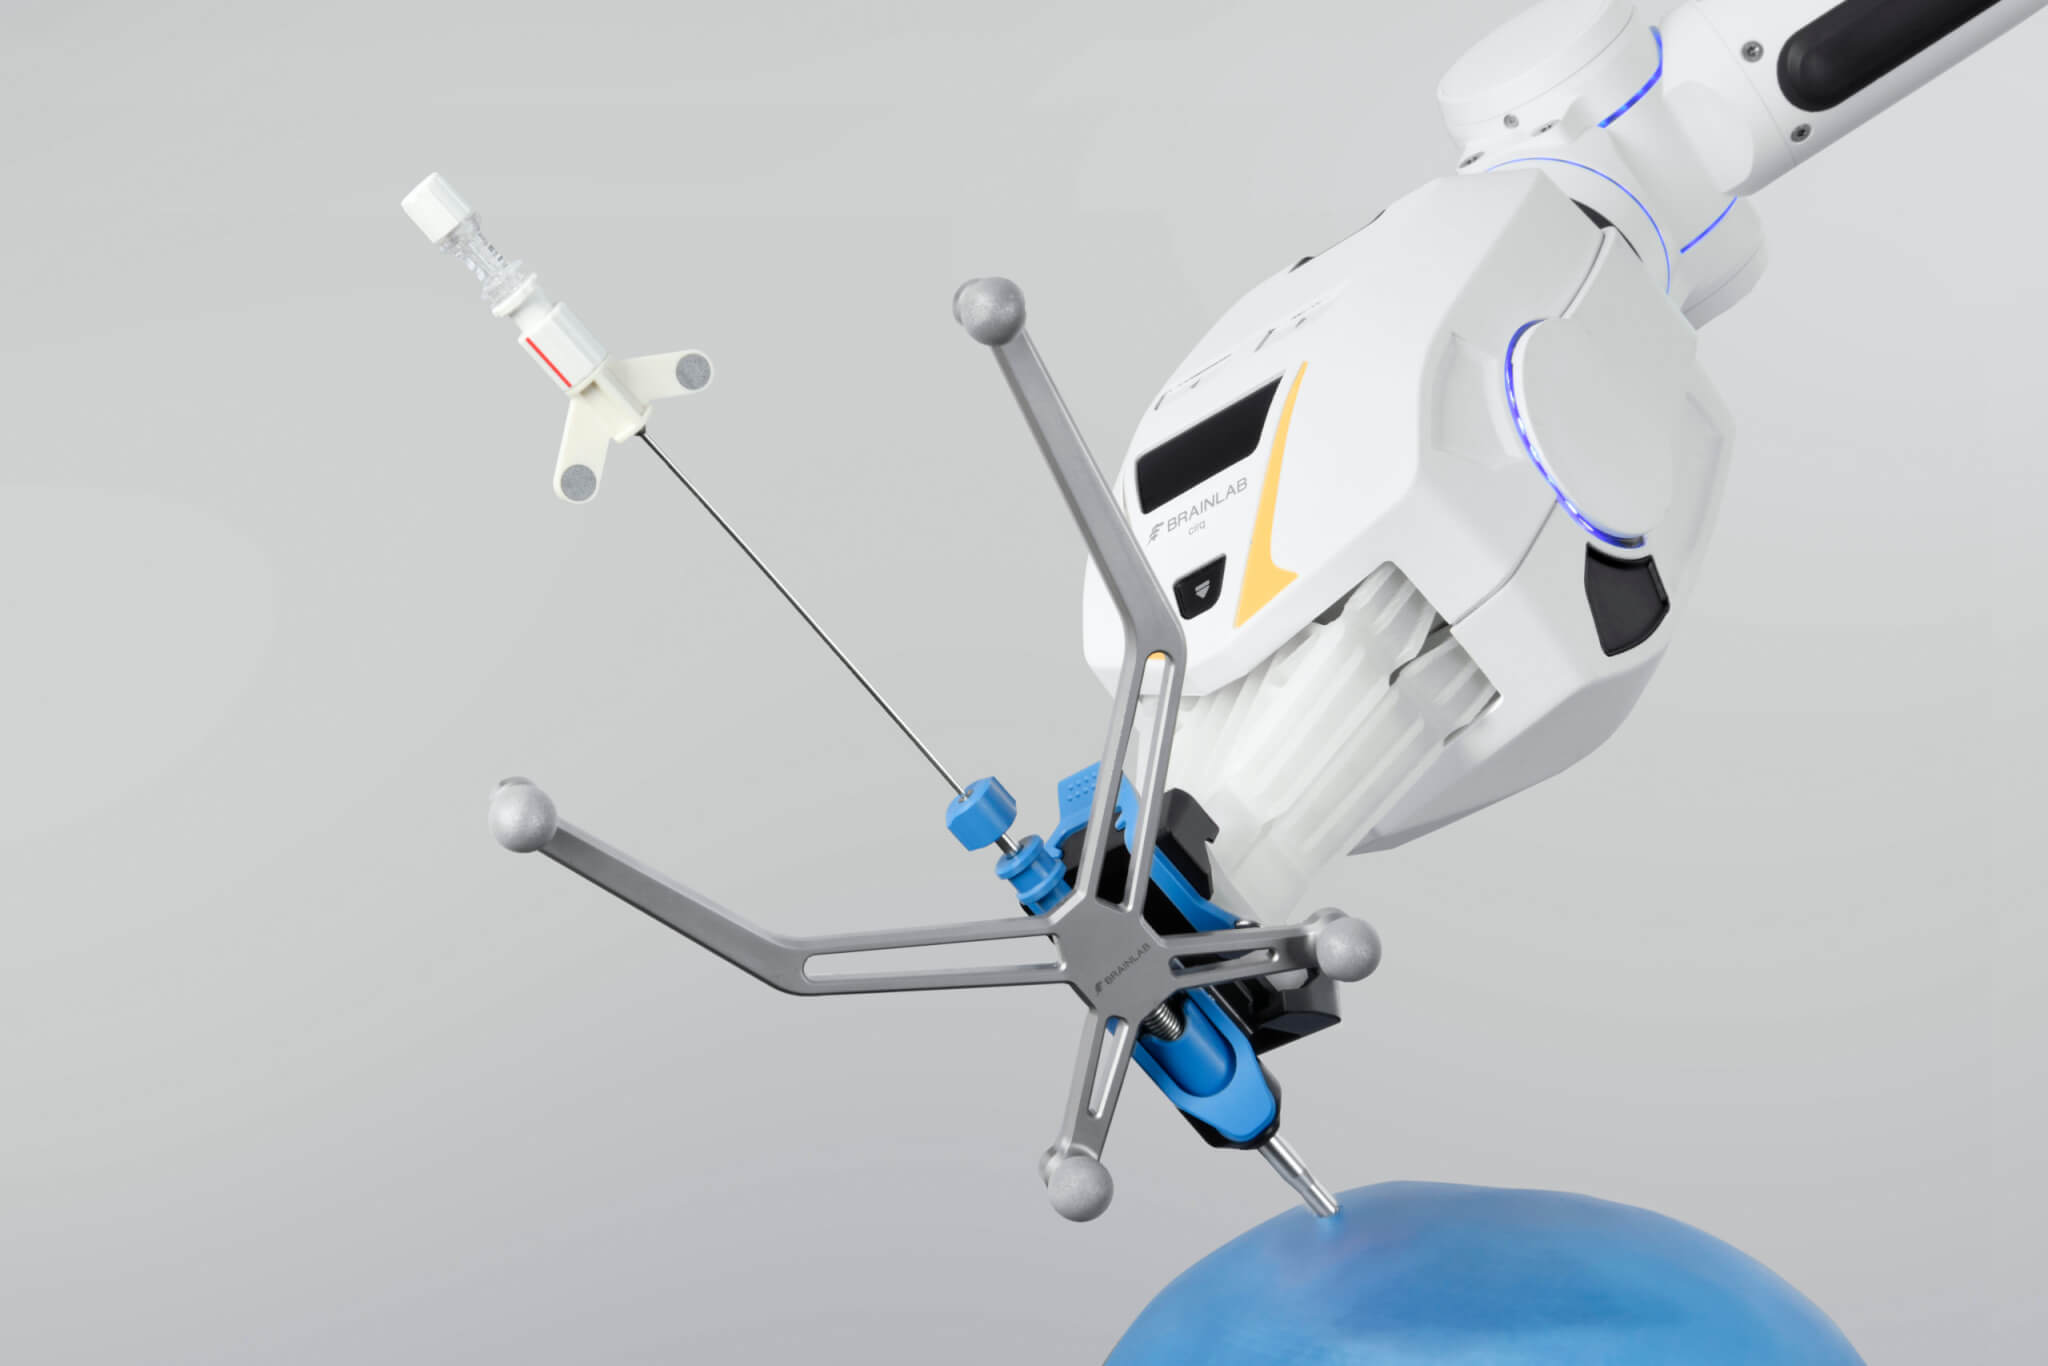 Le module de chirurgie crânienne d’un système de bras chirurgical robotisé tient une aiguille à biopsie naviguée au-dessus d’une représentation bleue d’un crâne sur un fond gris clair